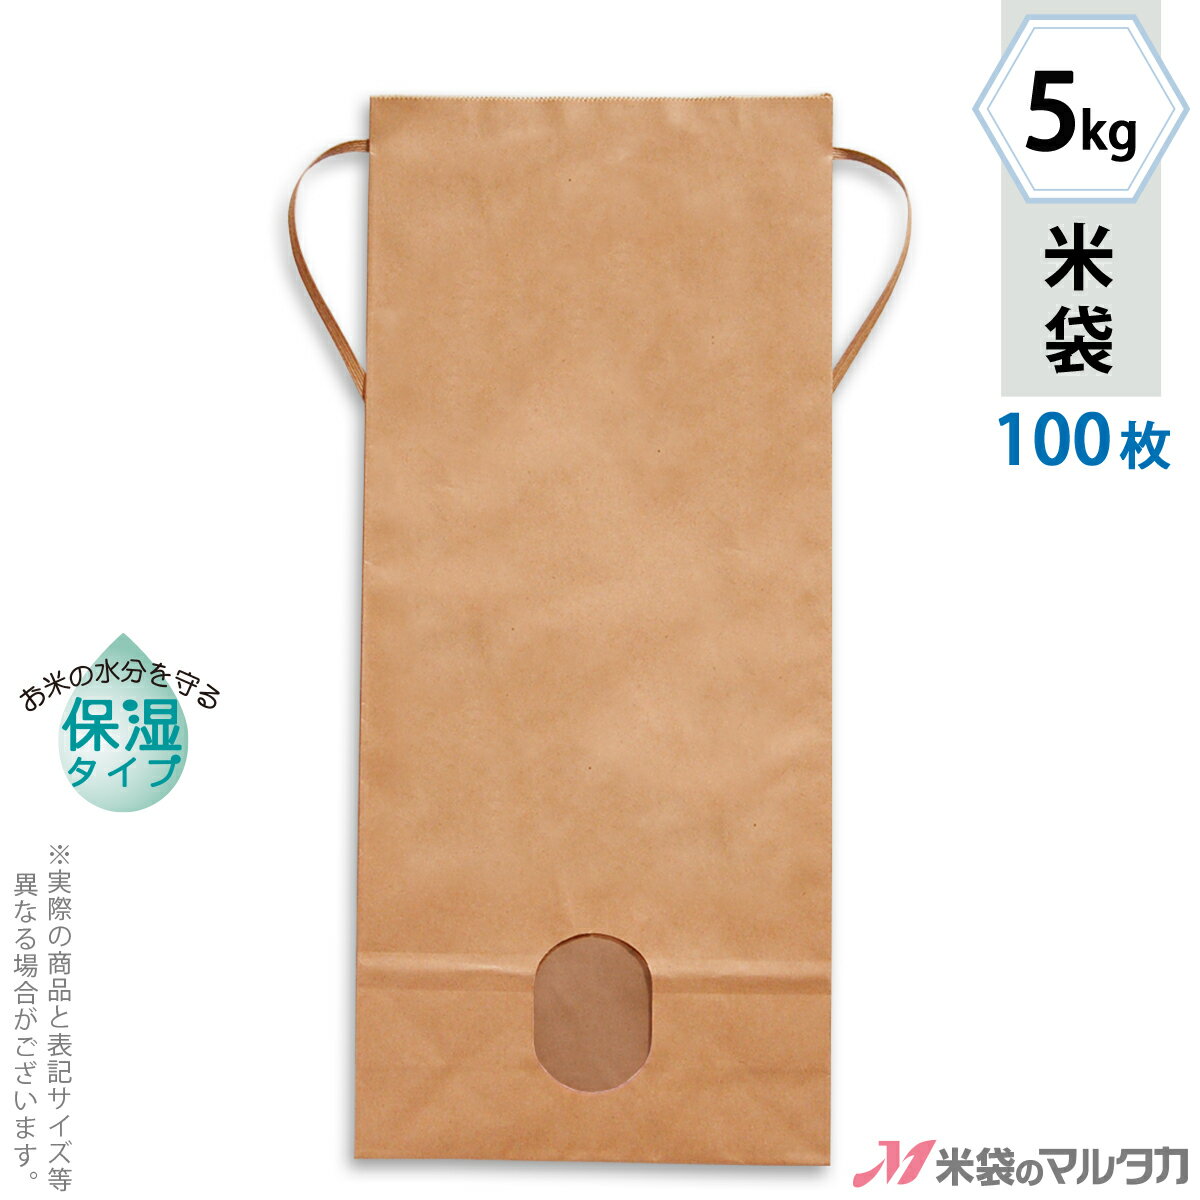 【寿】 米袋 5kg用 5枚セット H470W190D90（mm）